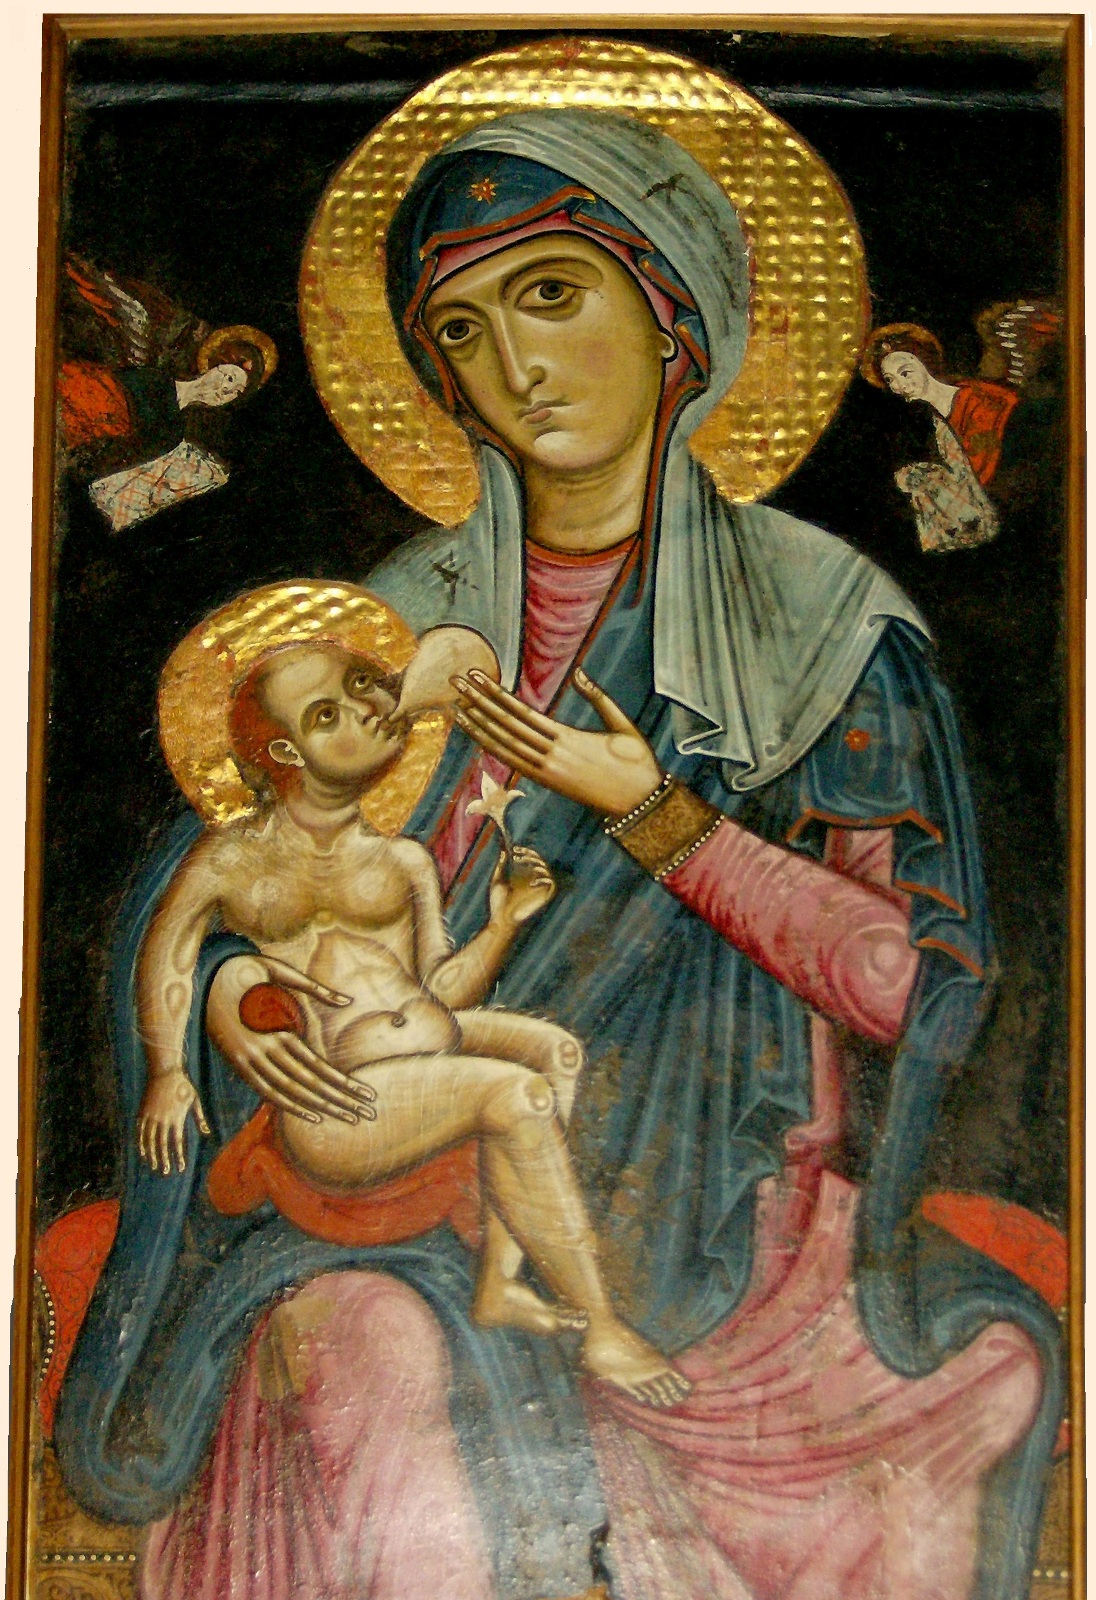 Икона Божией Матери "Млекопитательница", вторая половина XIII века. Южная Италия